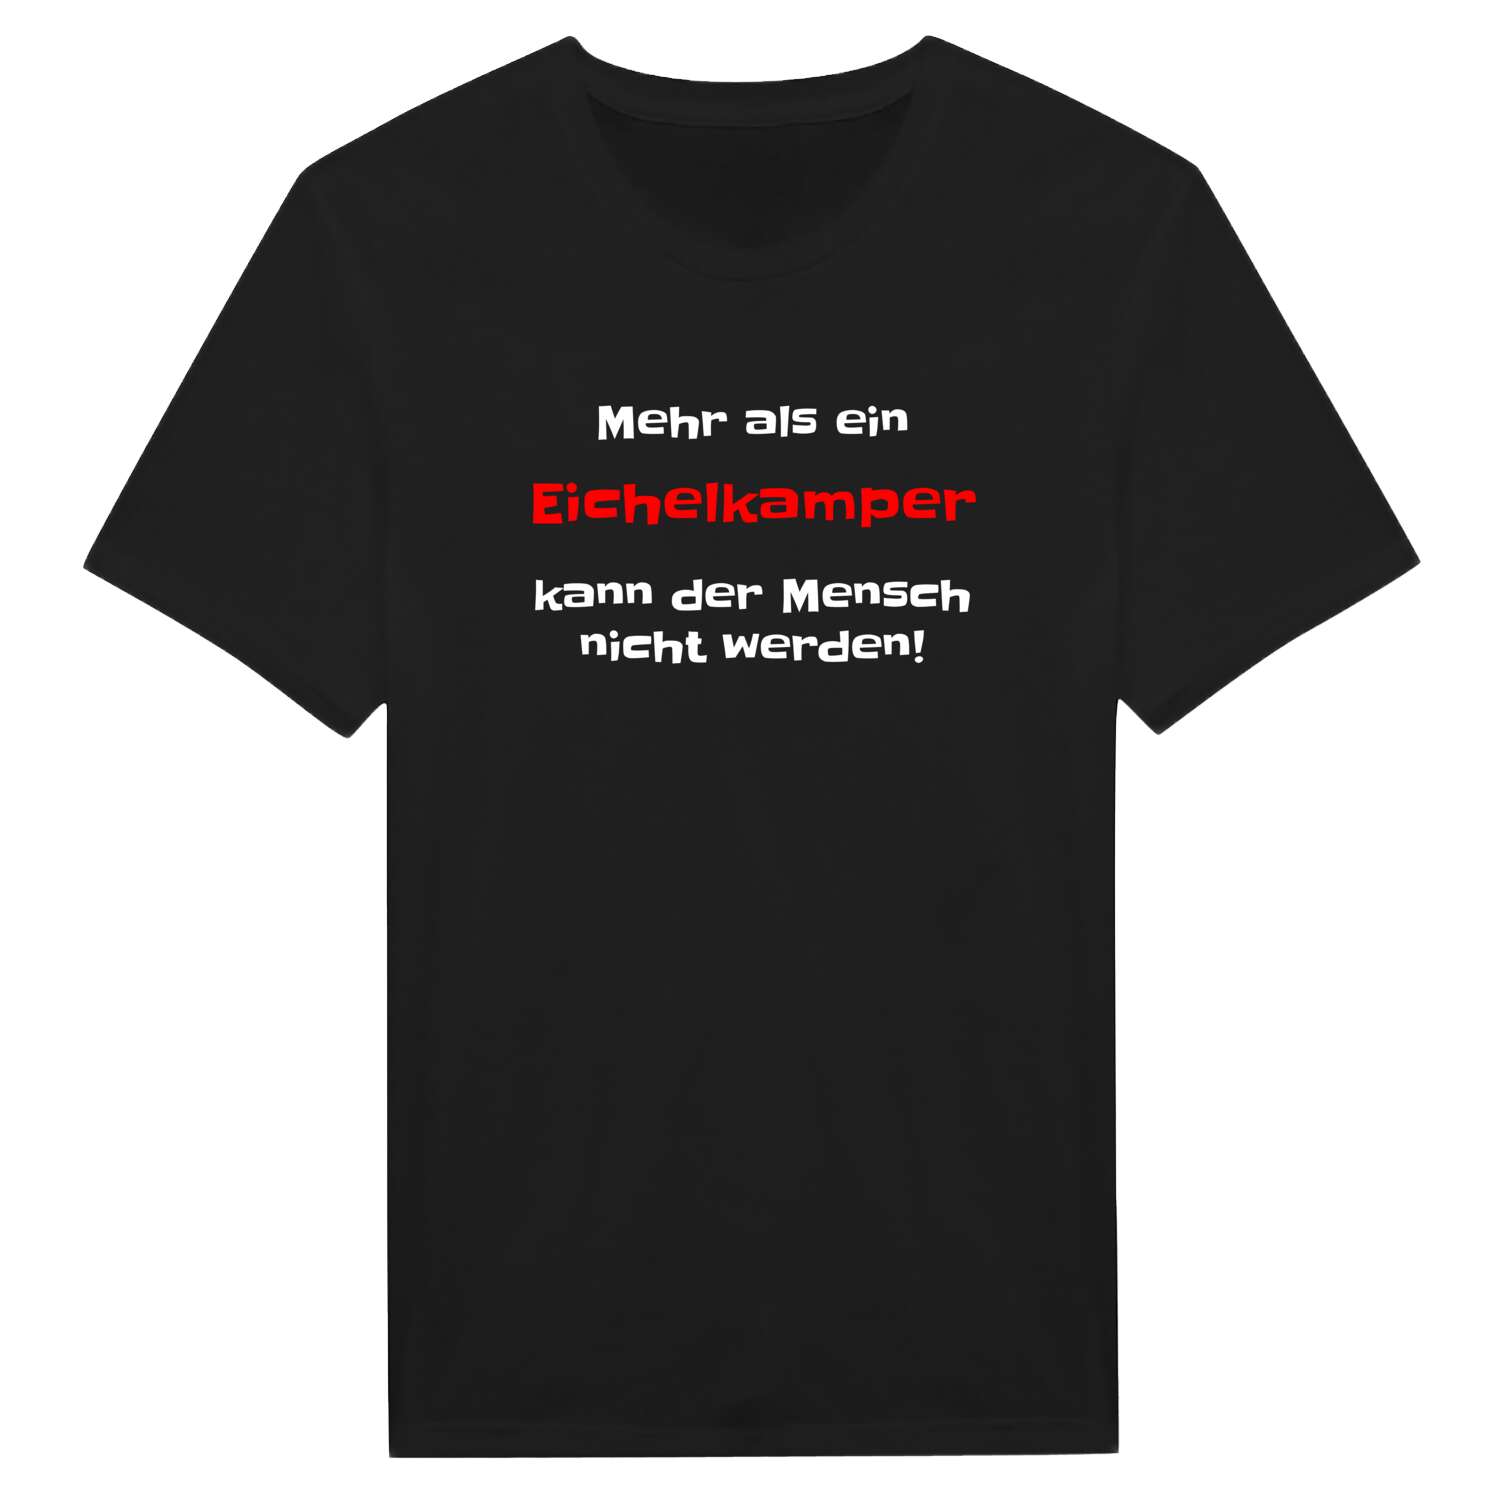 Eichelkamp T-Shirt »Mehr als ein«